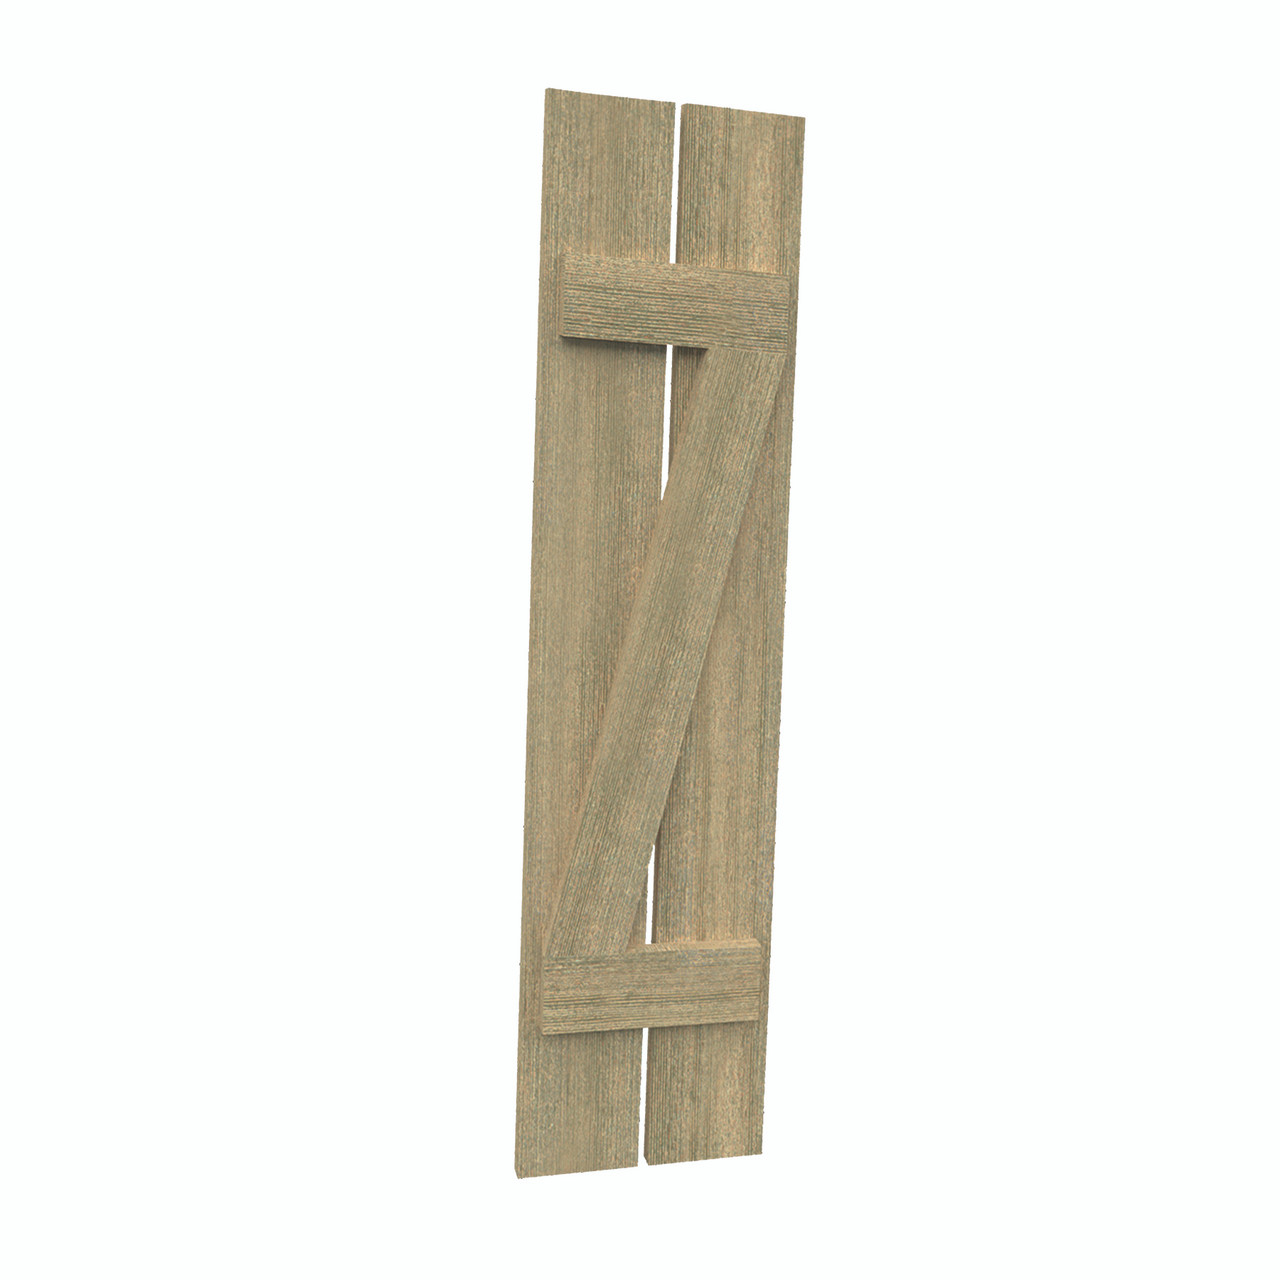 12 inch by 75 inch Plank Shutter with 2-Plank, Z-Batten